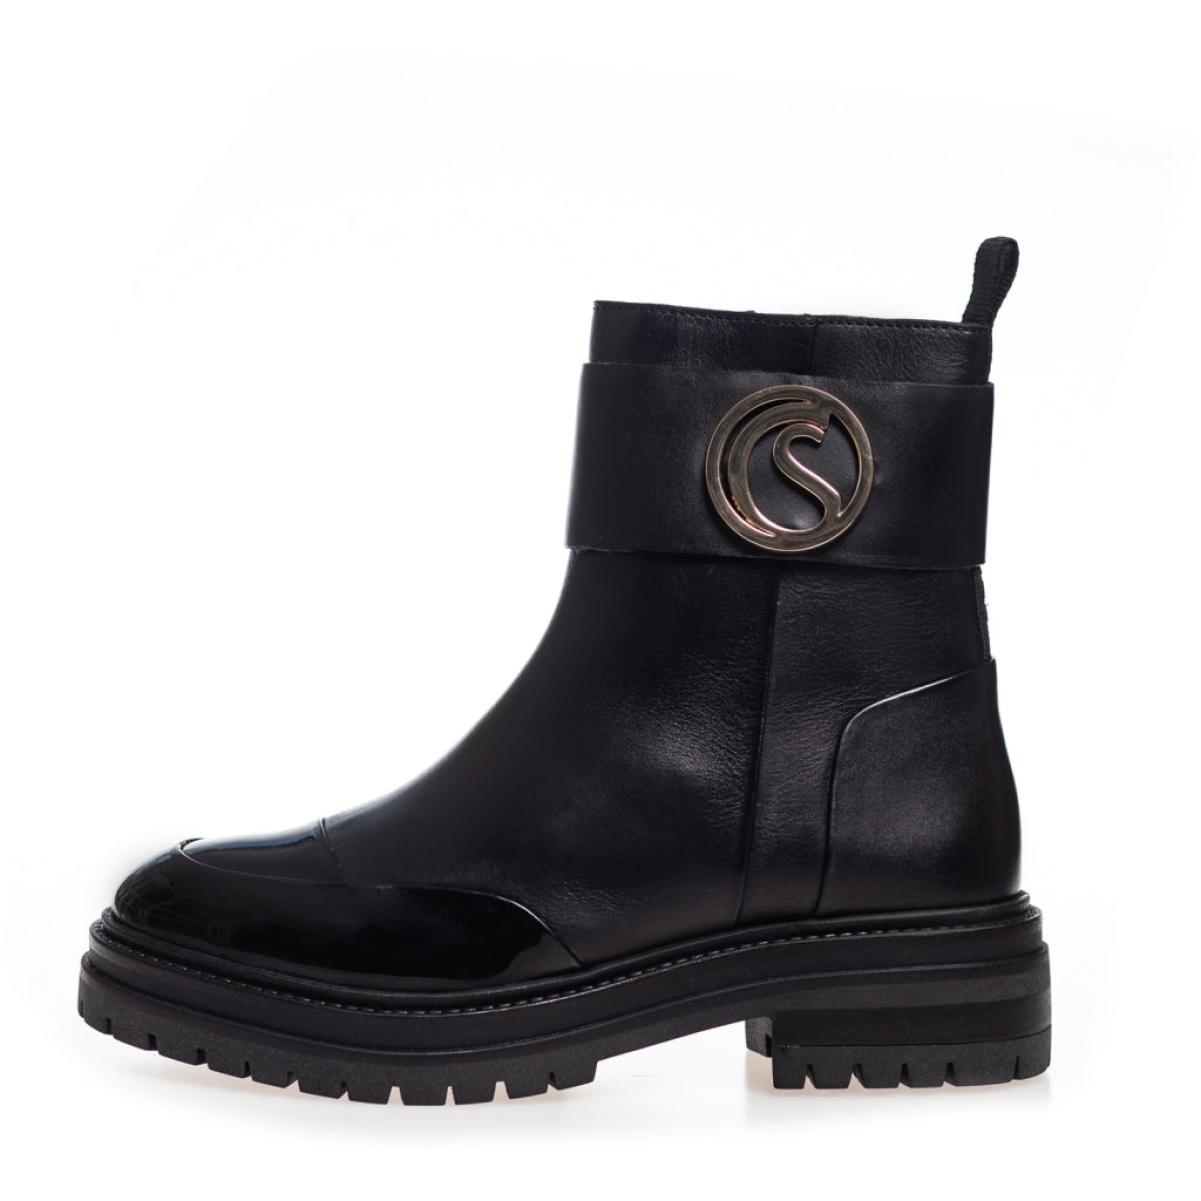 Windy - Black Patent Low Cost Ankle Boots Women Copenhagen Shoes